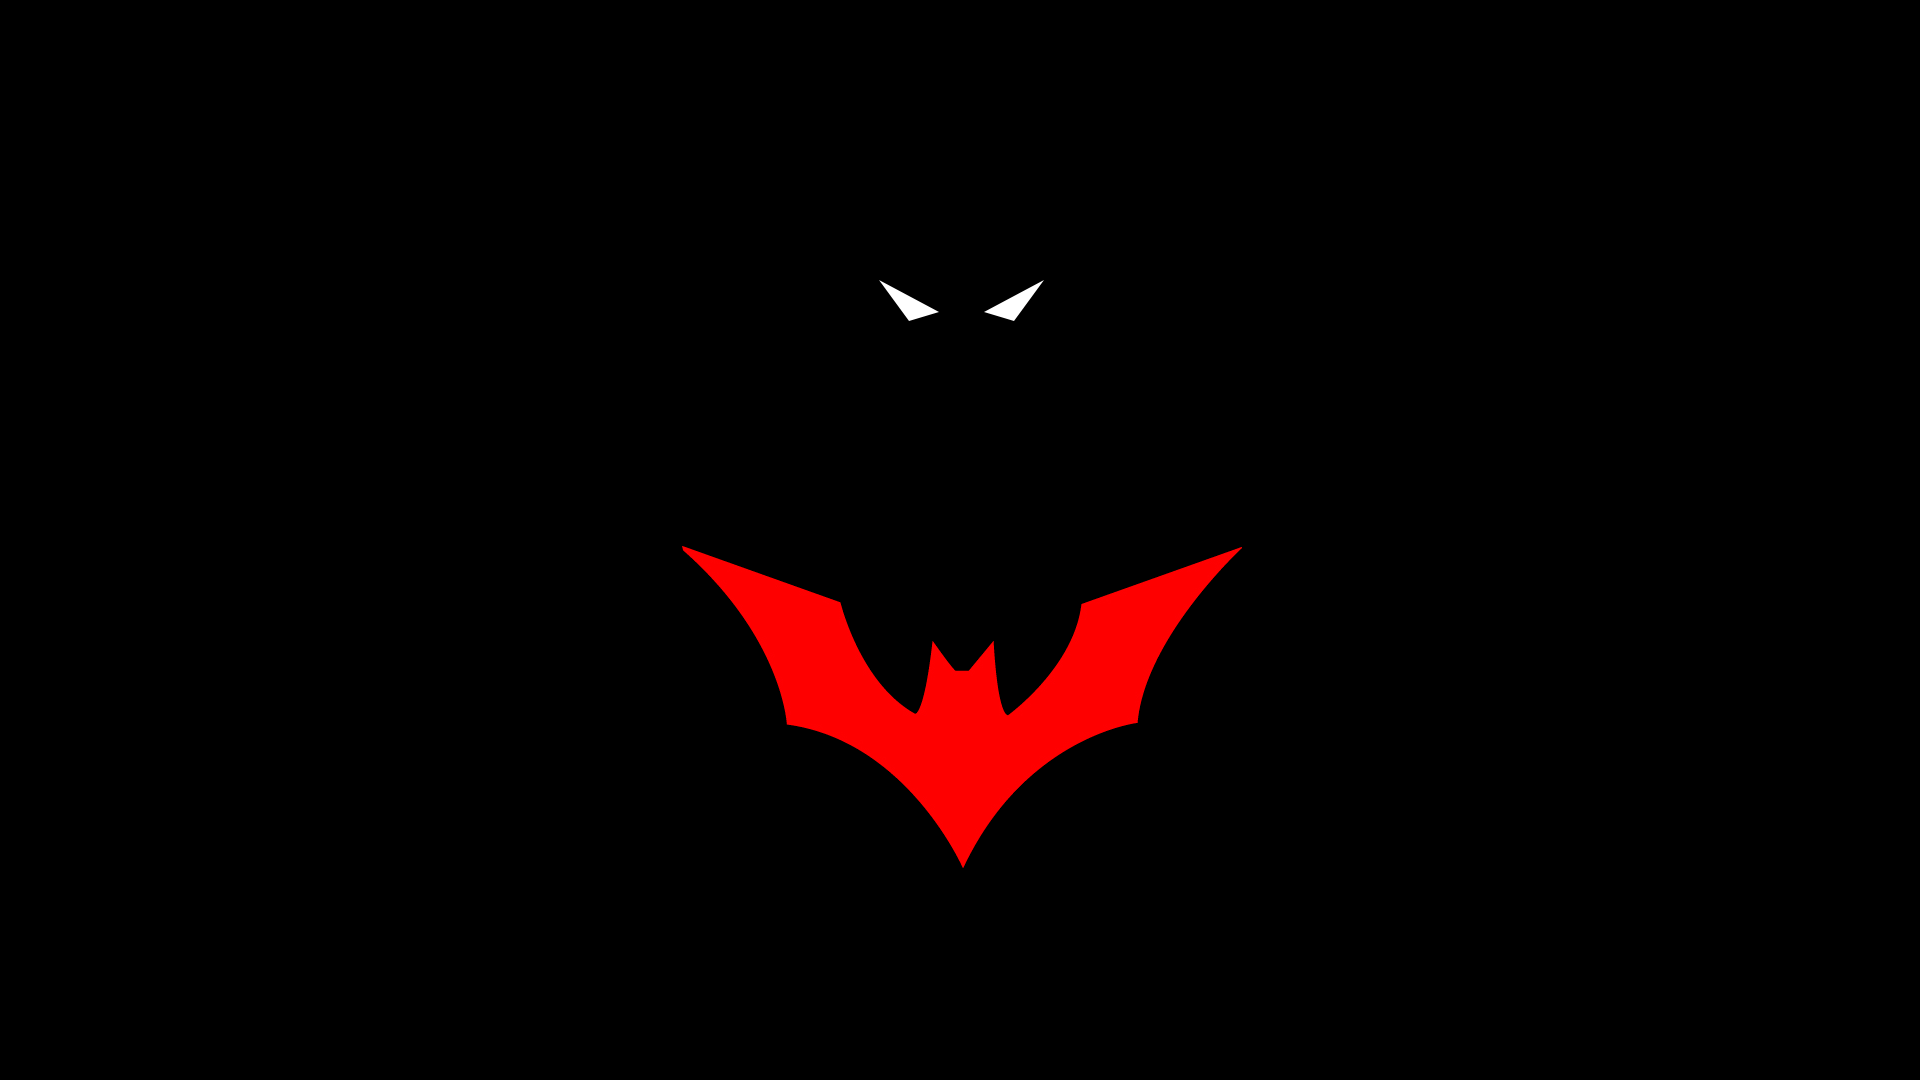 Amazing Batman Logo - 500+ Batman Logo, Wallpapers, HD Images, Vectors Free Download